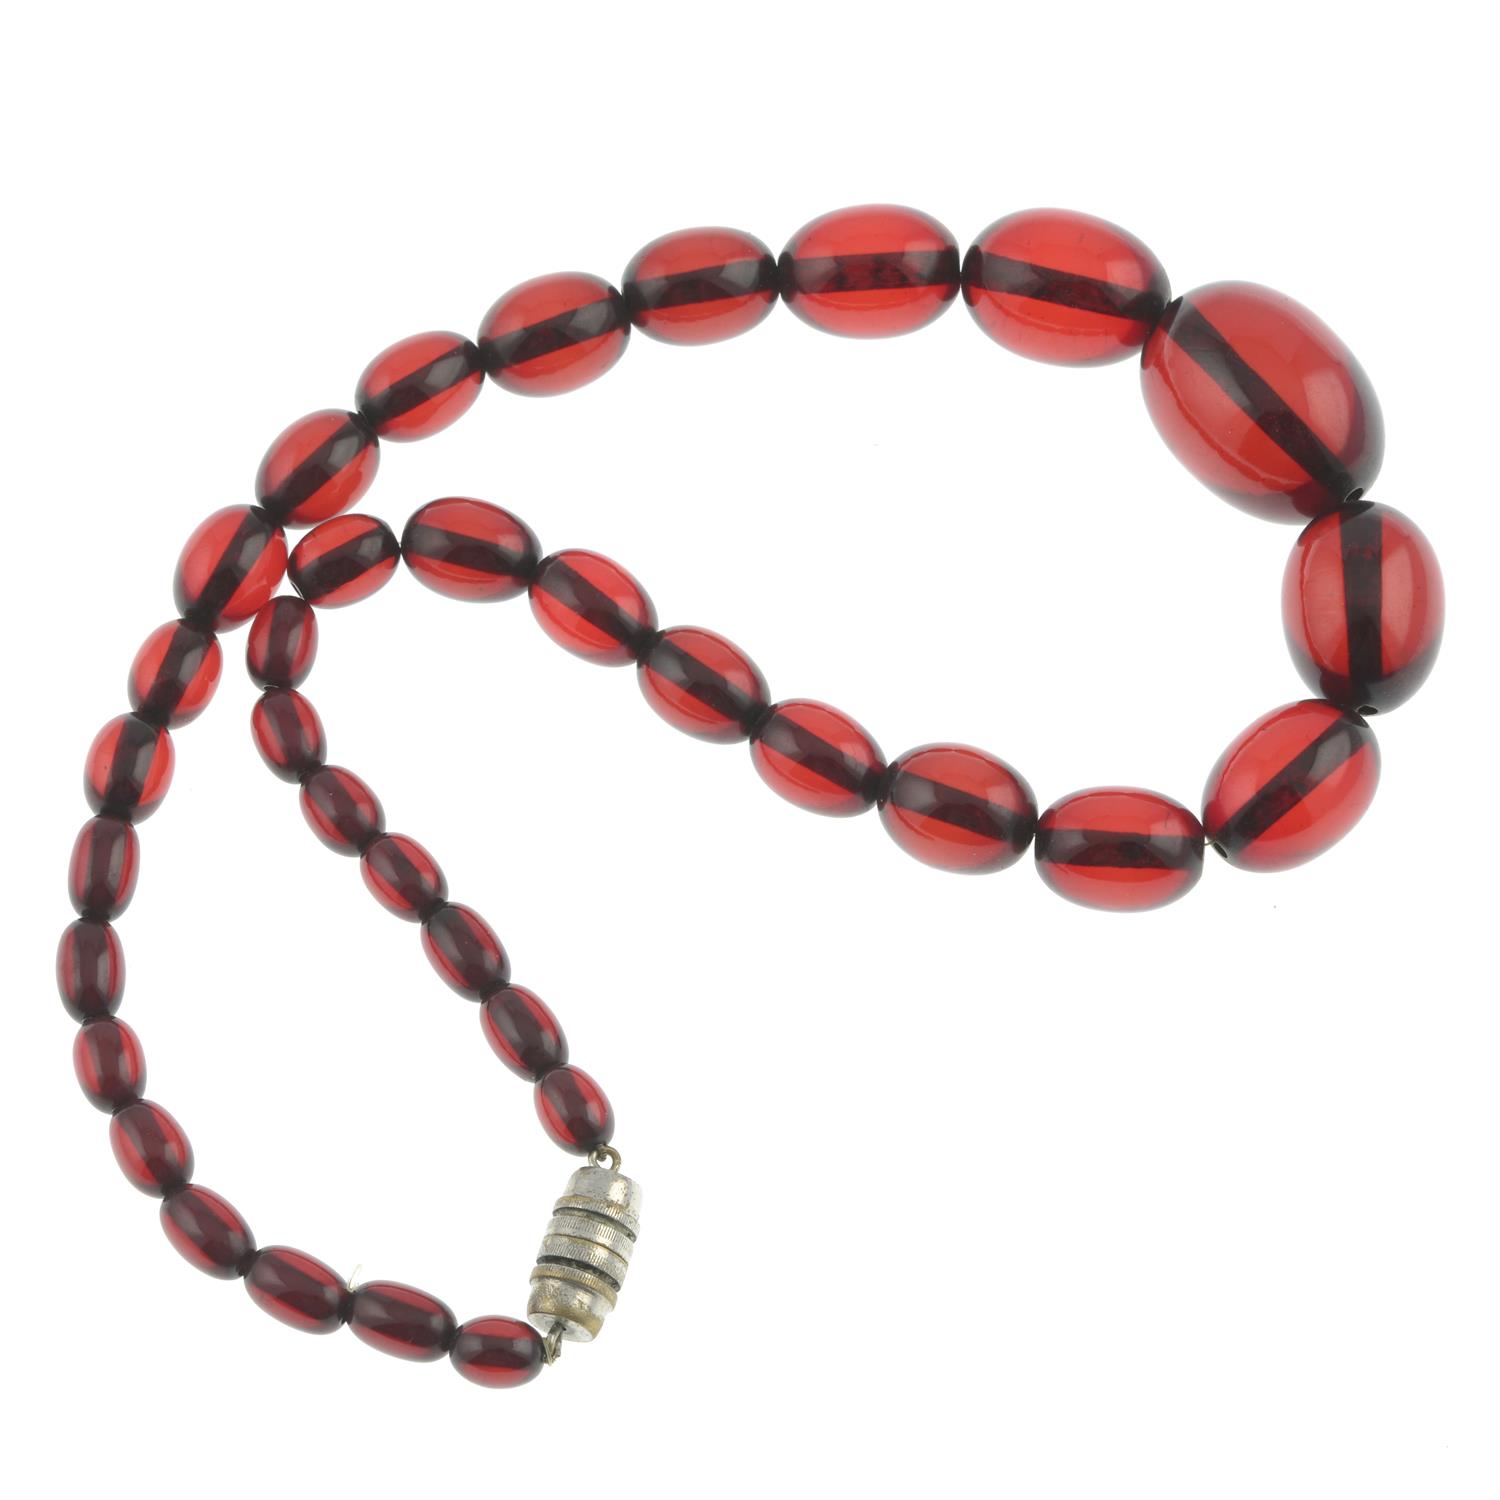 Bakelite single-strand necklace - Image 2 of 2